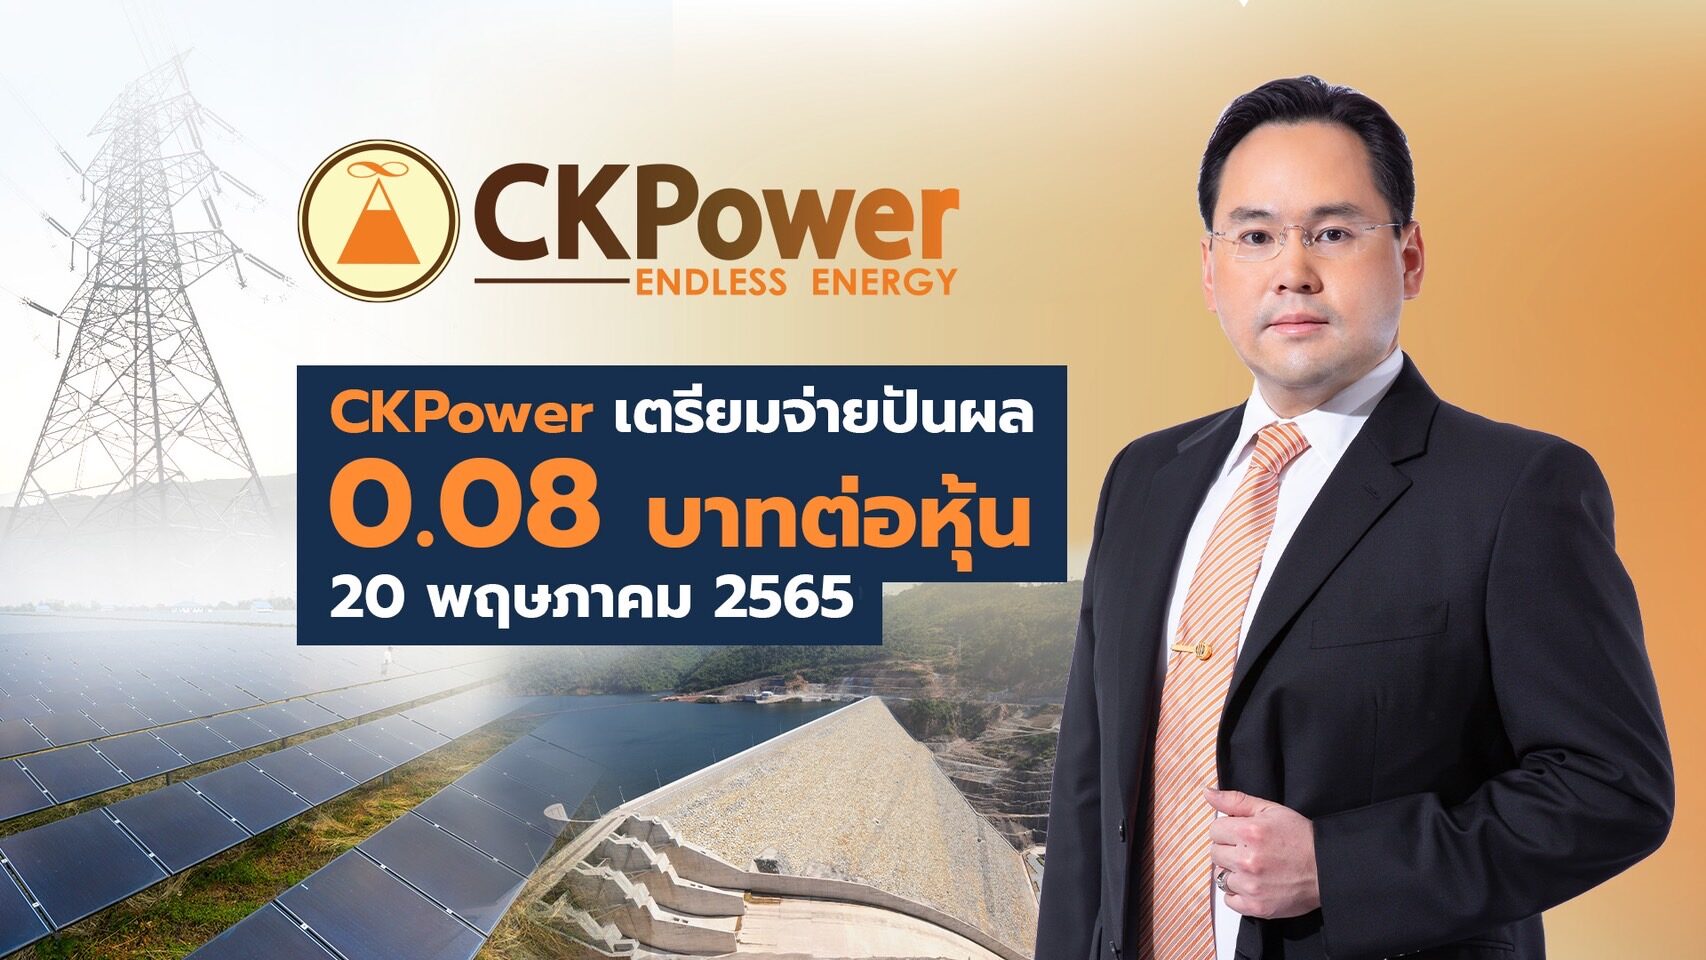 "CKPower"เตรียมจ่ายปันผล0.08บาทต่อหุ้น 20 พ.ค.นี้ มากกว่าปีก่อนถึง128.6% สูงเป็นประวัติการณ์ของบริษัท